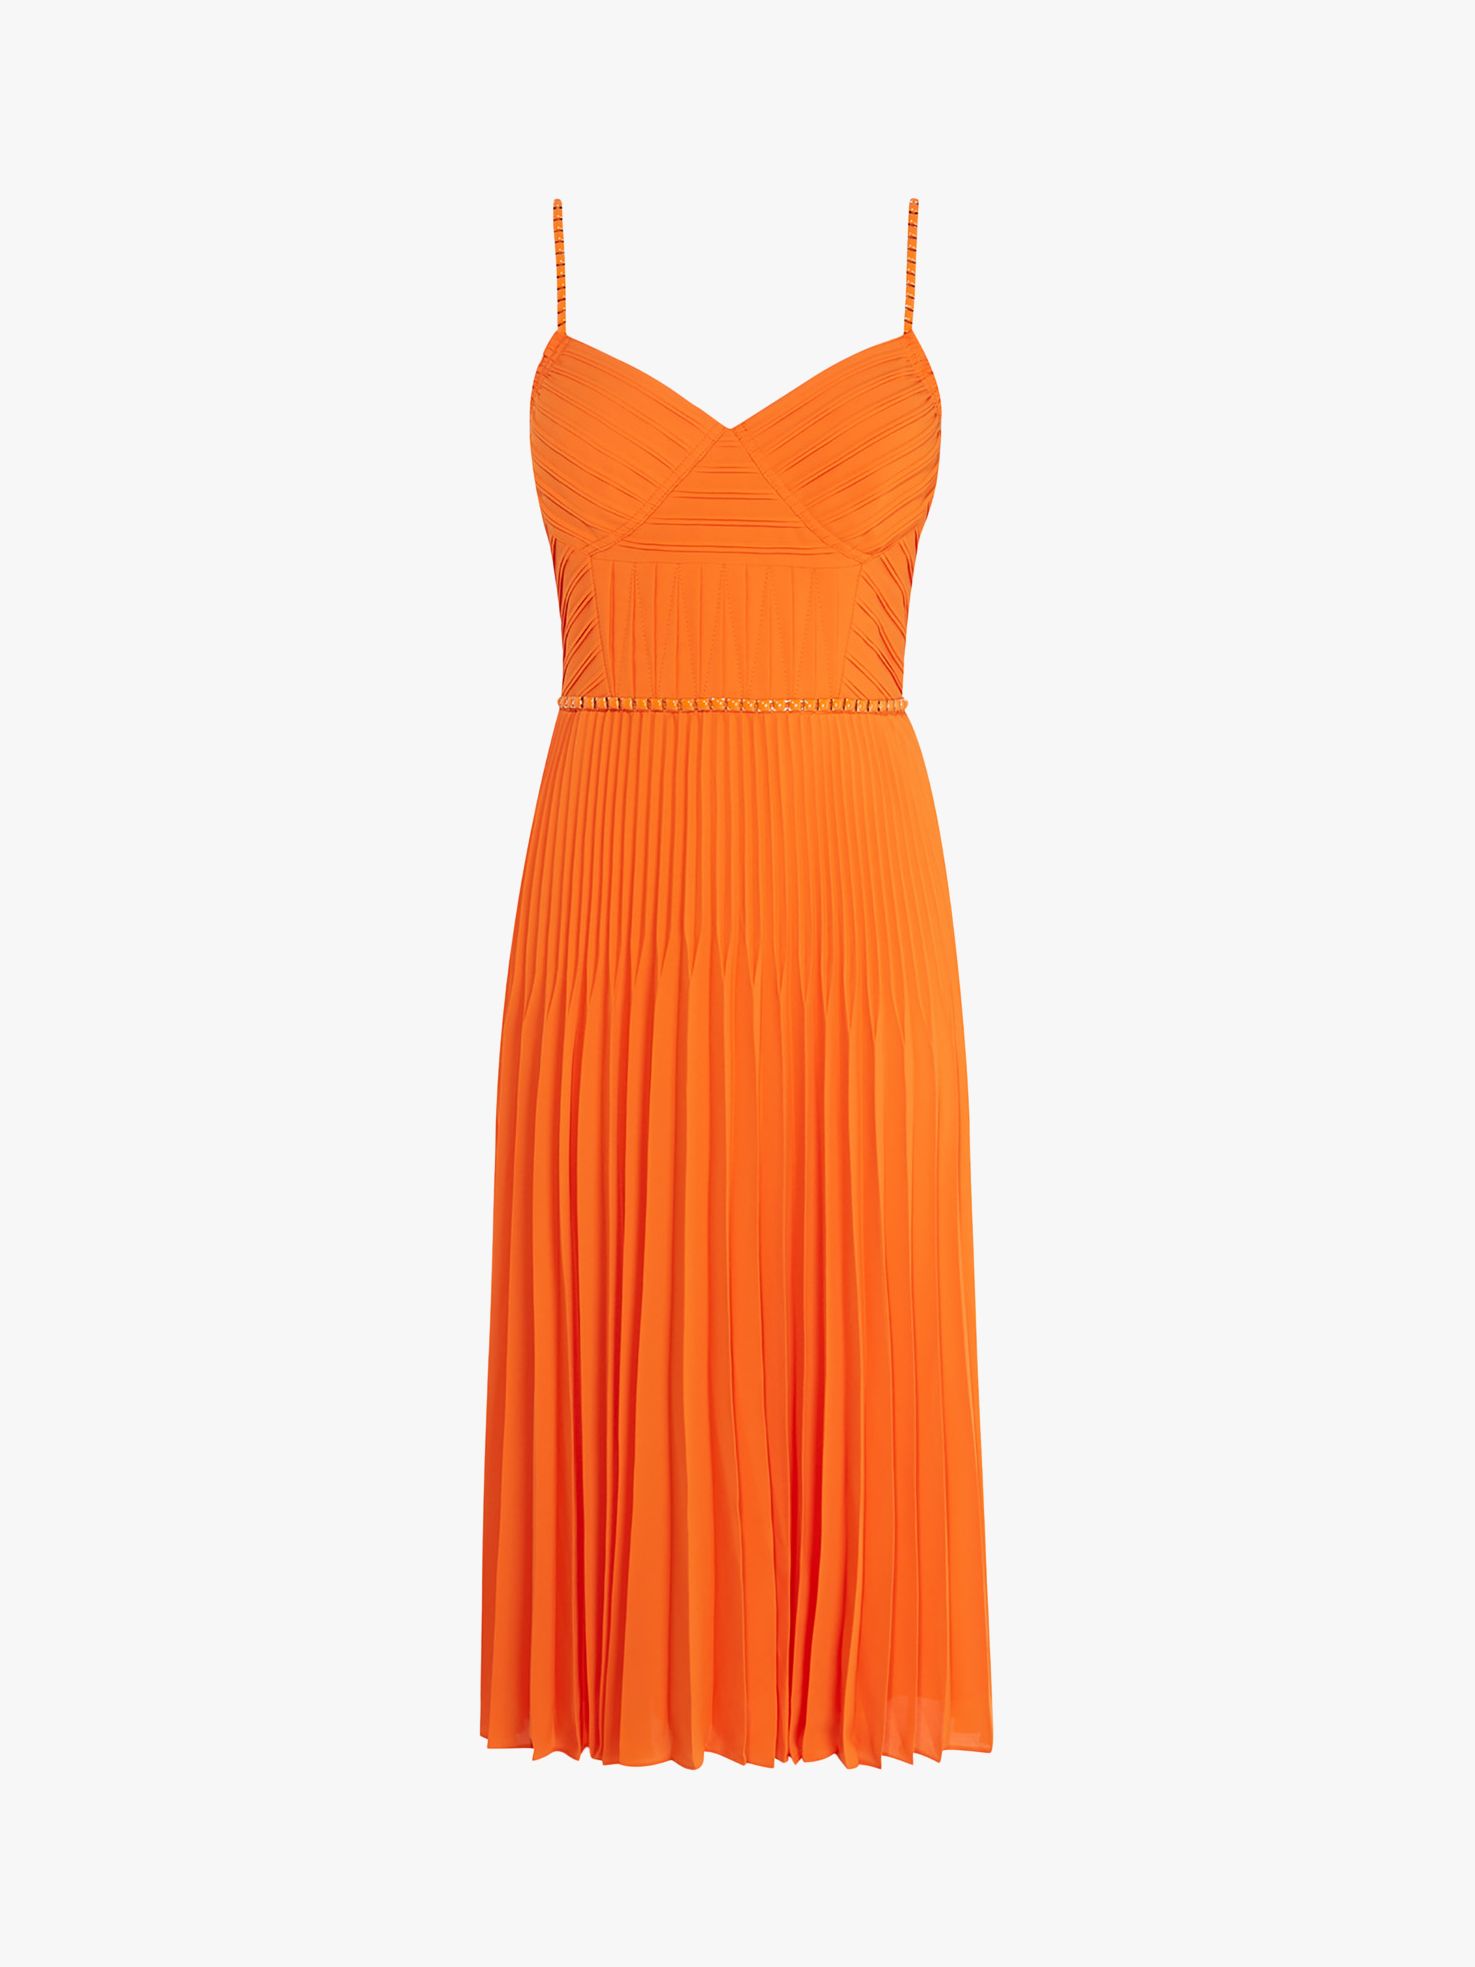 pleated orange dress